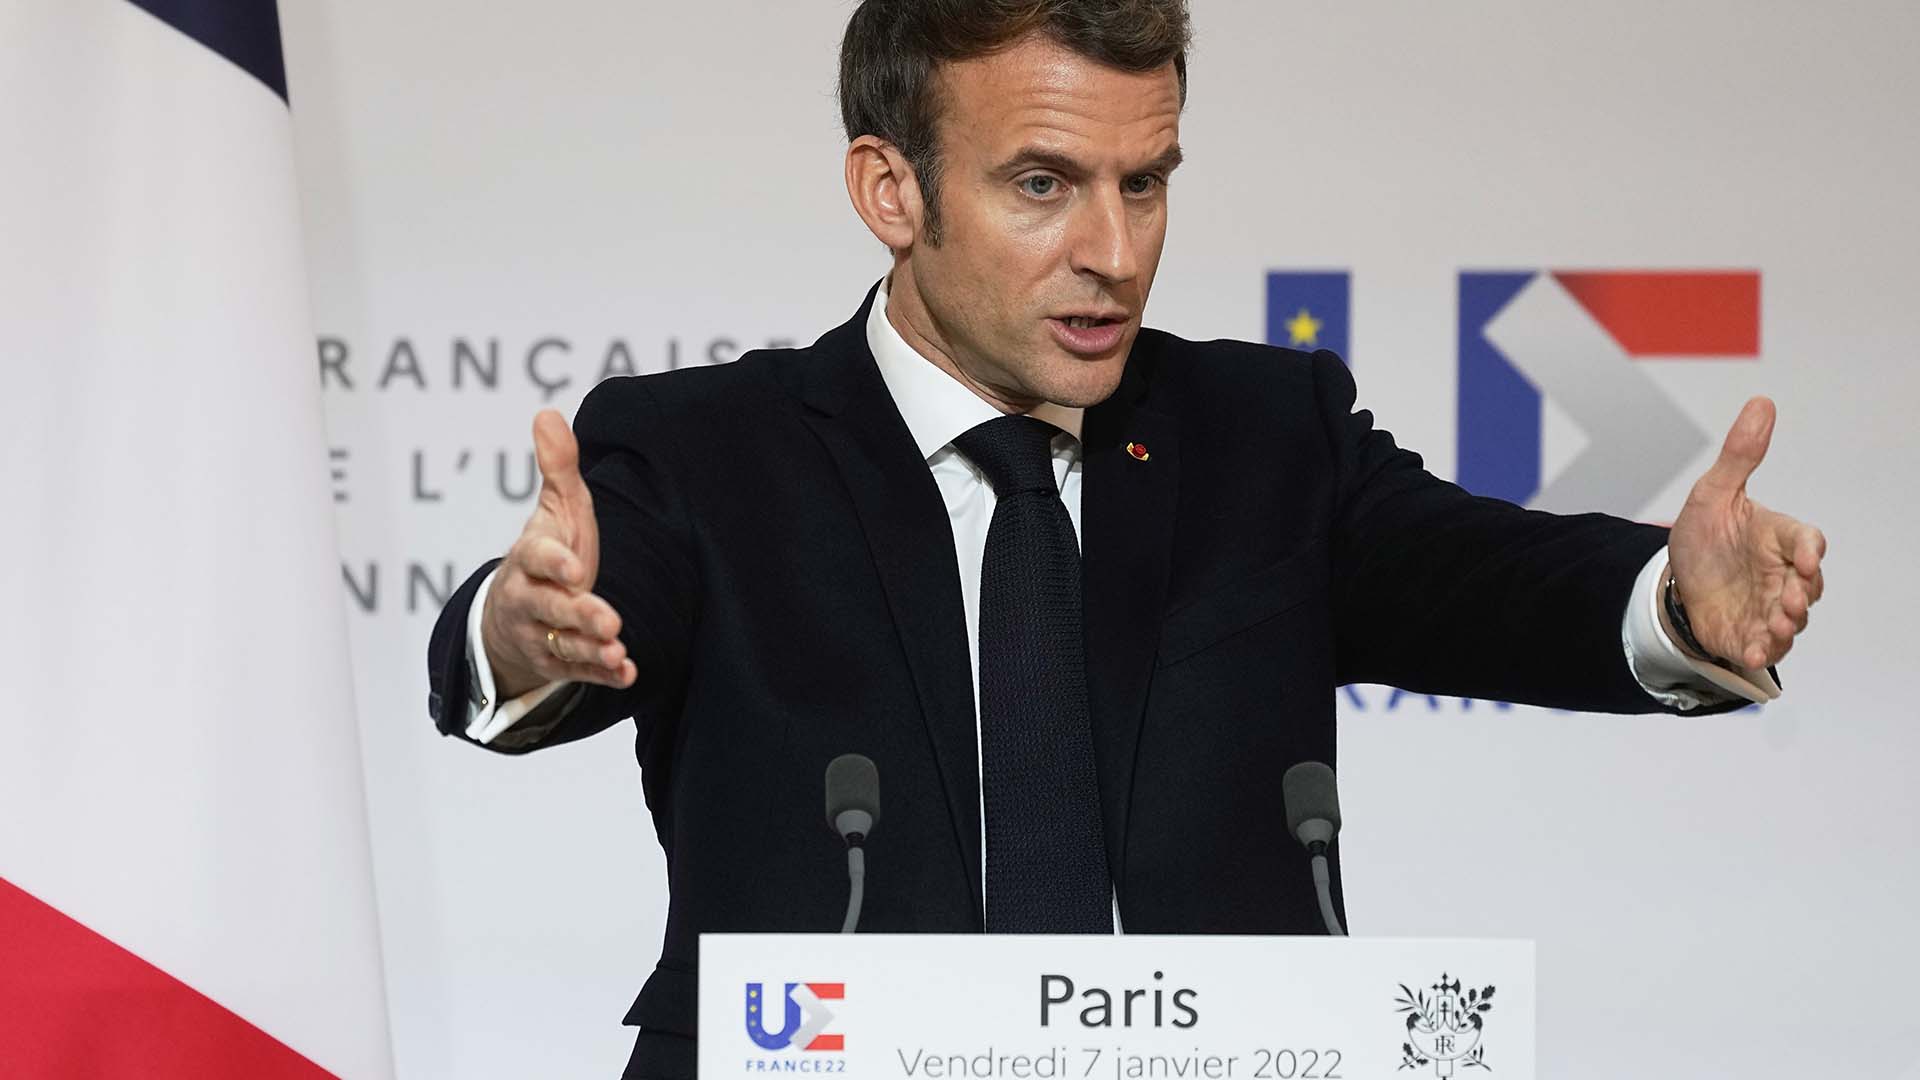 Le président français Emmanuel Macron s'exprime alors qu'il participe à une conférence de presse avec la présidente de la Commission européenne Ursula von der Leyen après une réunion à l'Elysée à Paris, en France, le vendredi 7 janvier 2022. (AP Photo/Michel Euler, Pool)